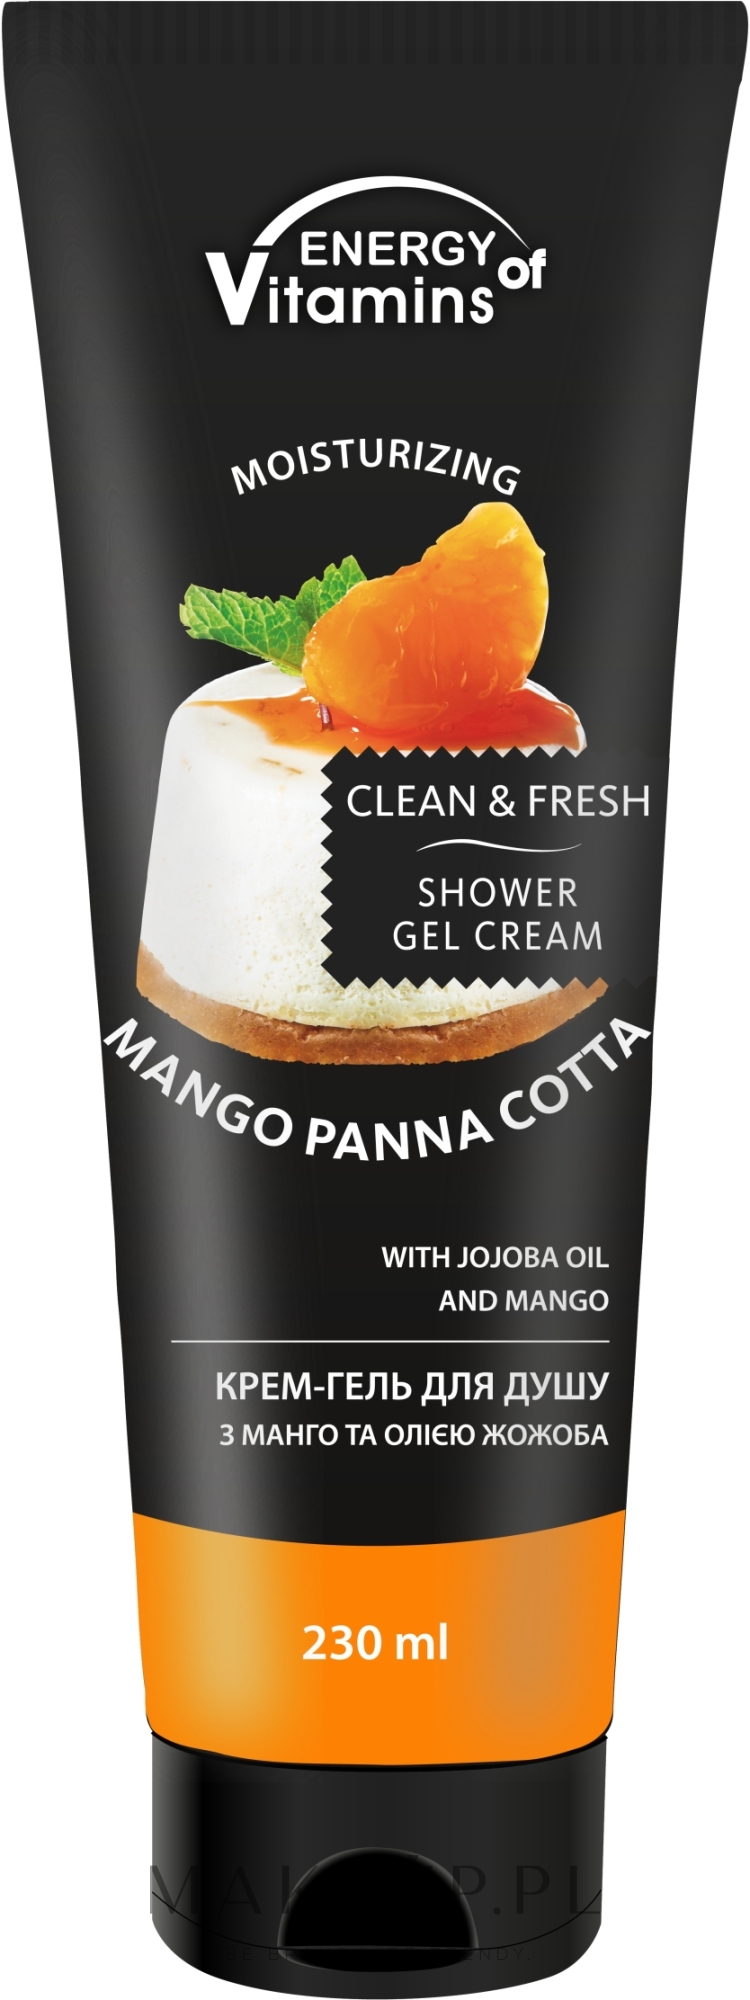 Kremowy żel pod prysznic - Energy of Vitamins Cream Shower Gel Mango Panna Cotta — Zdjęcie 230 ml